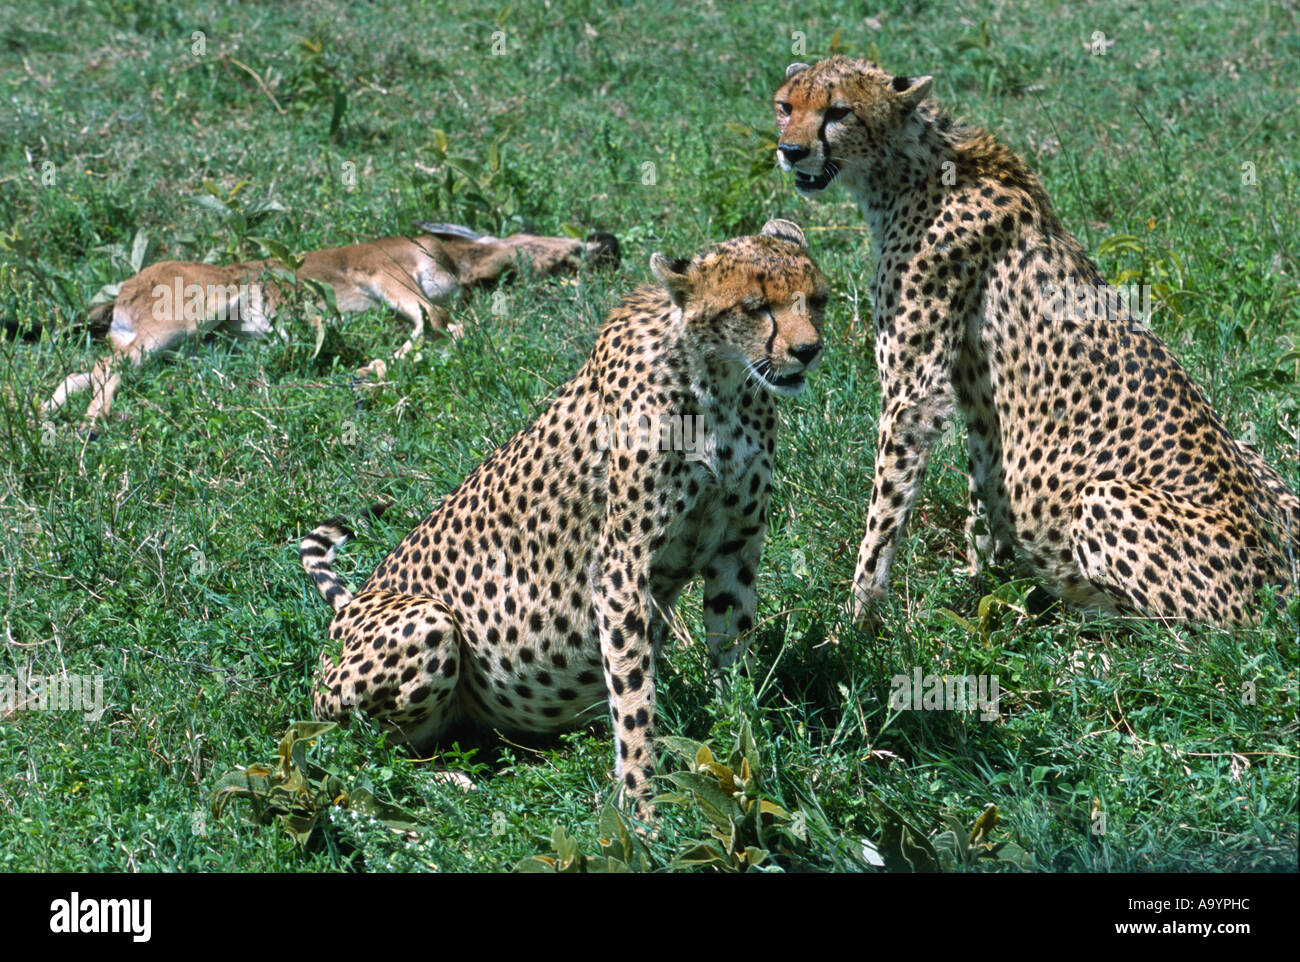 Les guépards qu'ils tuent dans le Parc National du Serengeti. Tanzanie, Afrique. (Acinonyx jubatus) Banque D'Images